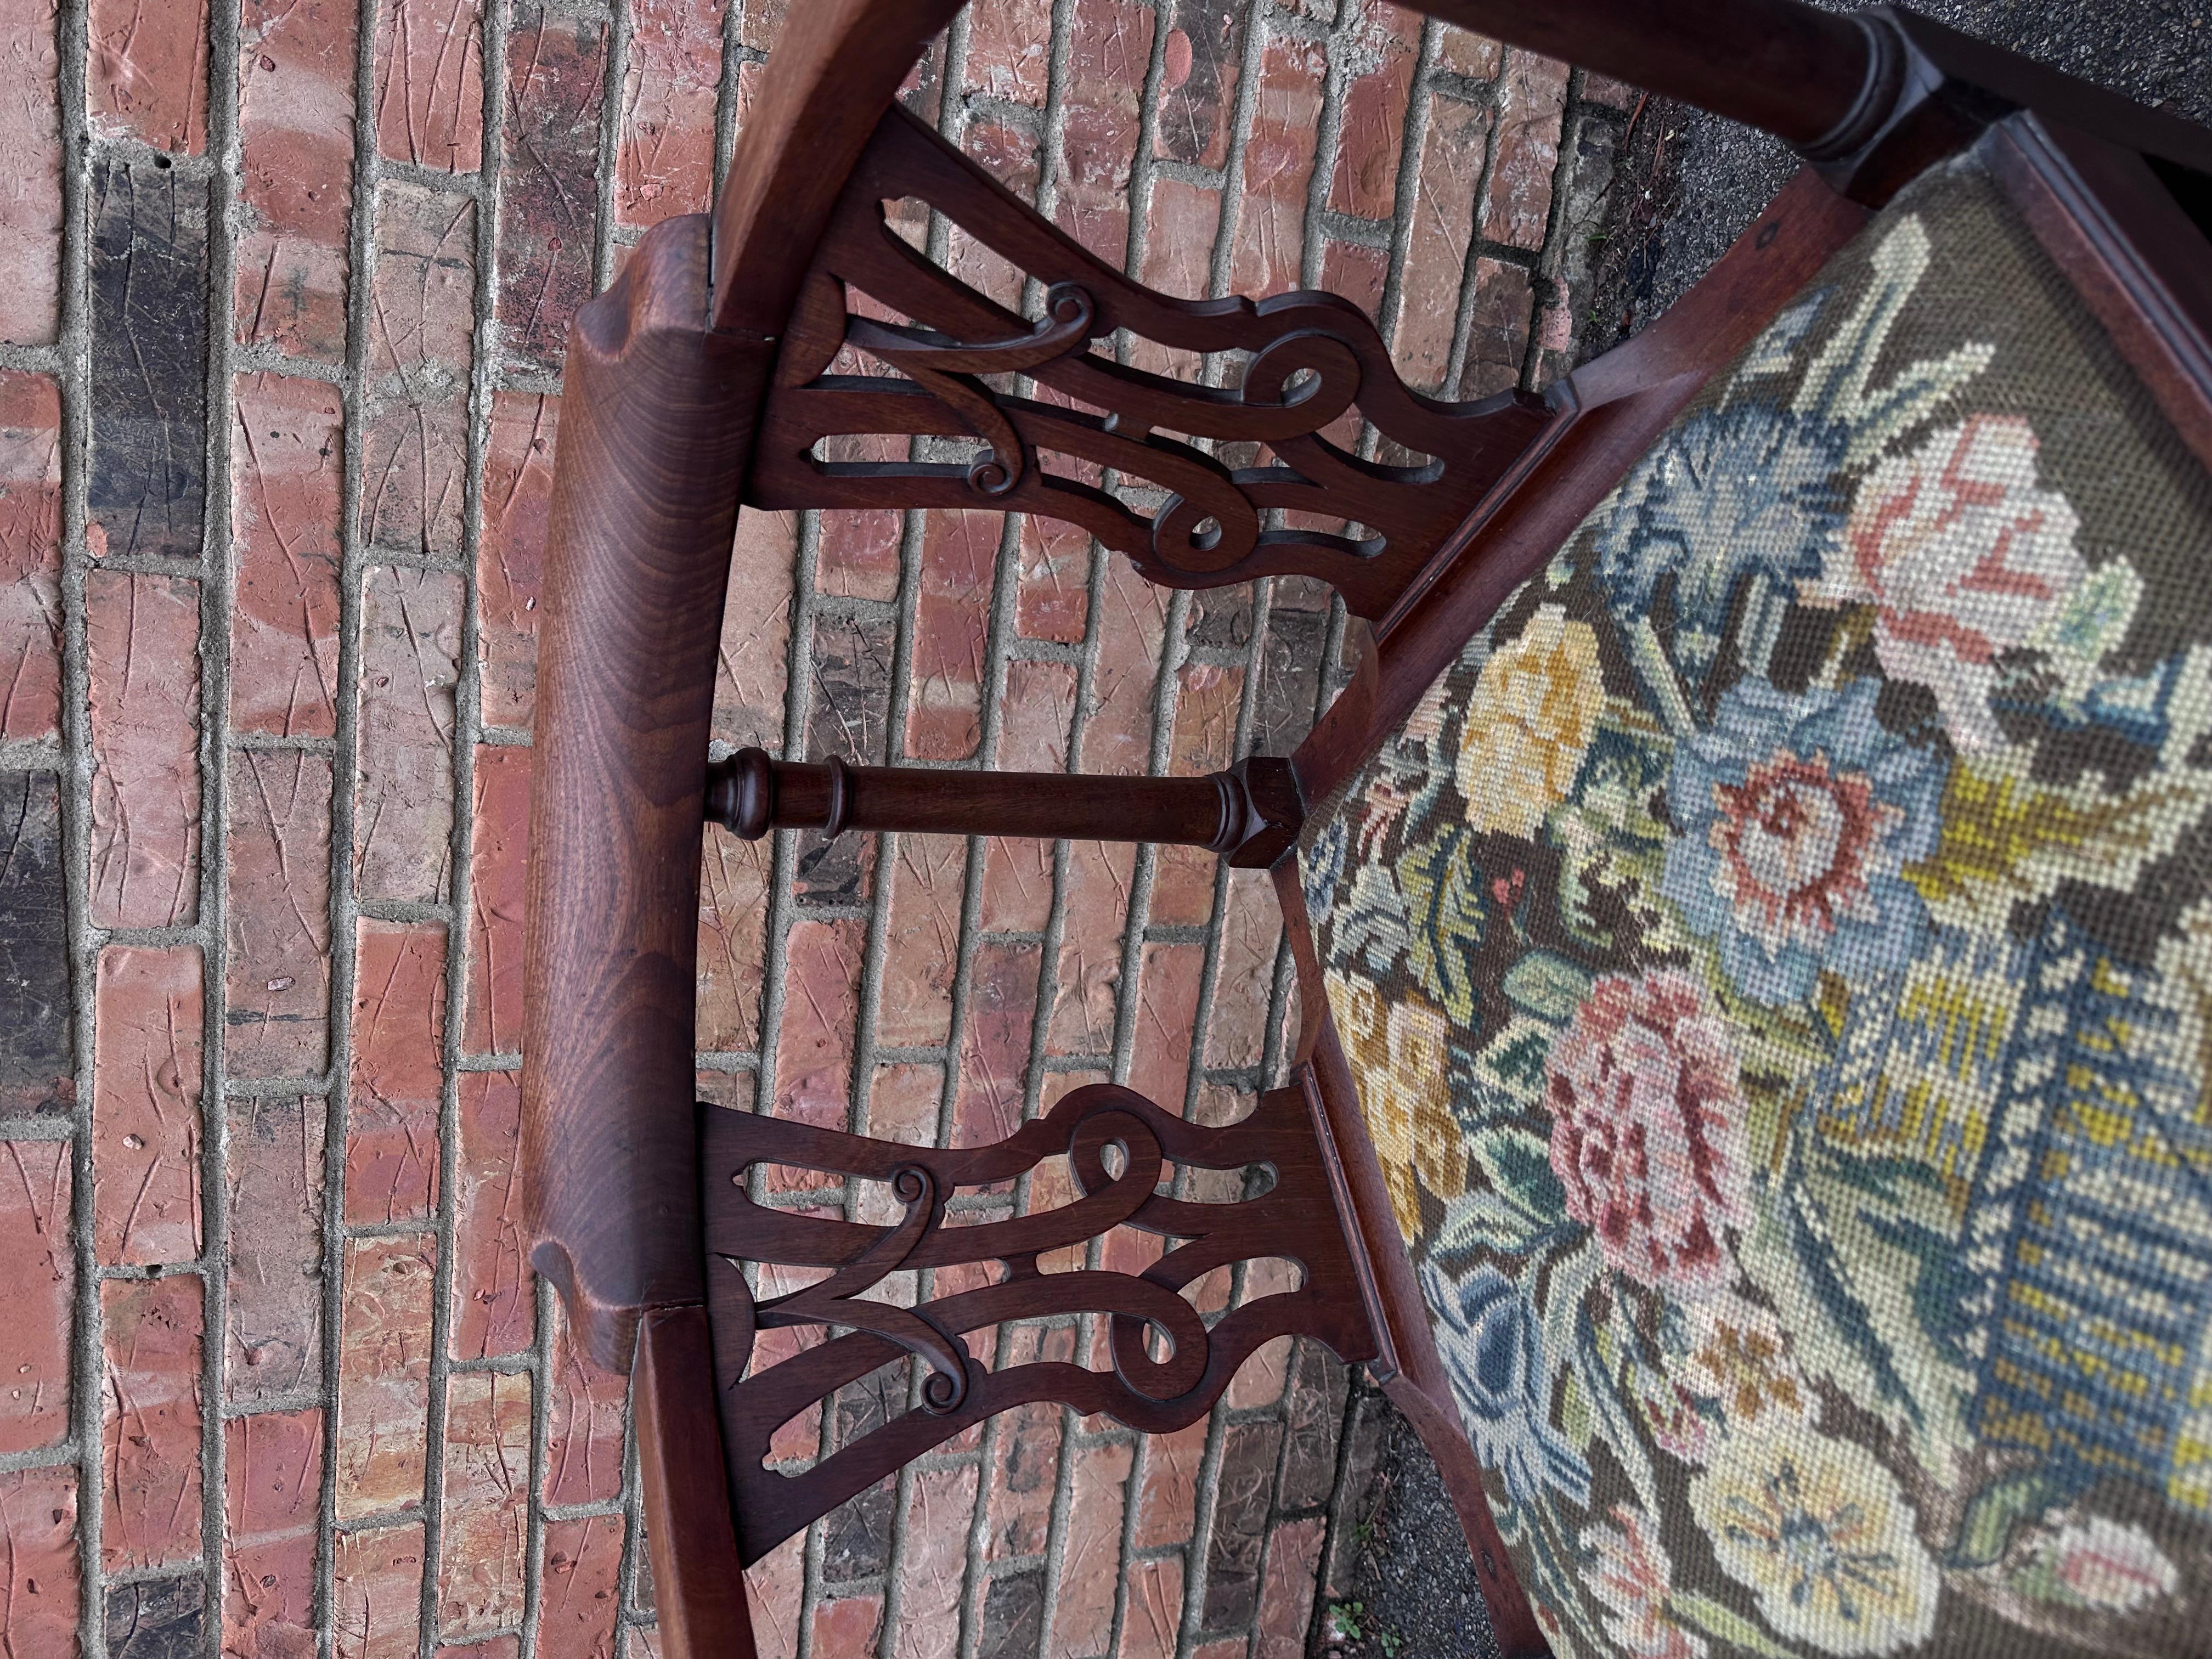 Das ist ein schöner kleiner Eckstuhl! Dieses Stück ist englisch und stammt aus dem 19. Jahrhundert. Das dunkle Holz in Kombination mit dem hellen, pastellfarbenen Nadelspitzenstoff bildet einen schönen Kontrast. Der Stuhl hat auch ein attraktives